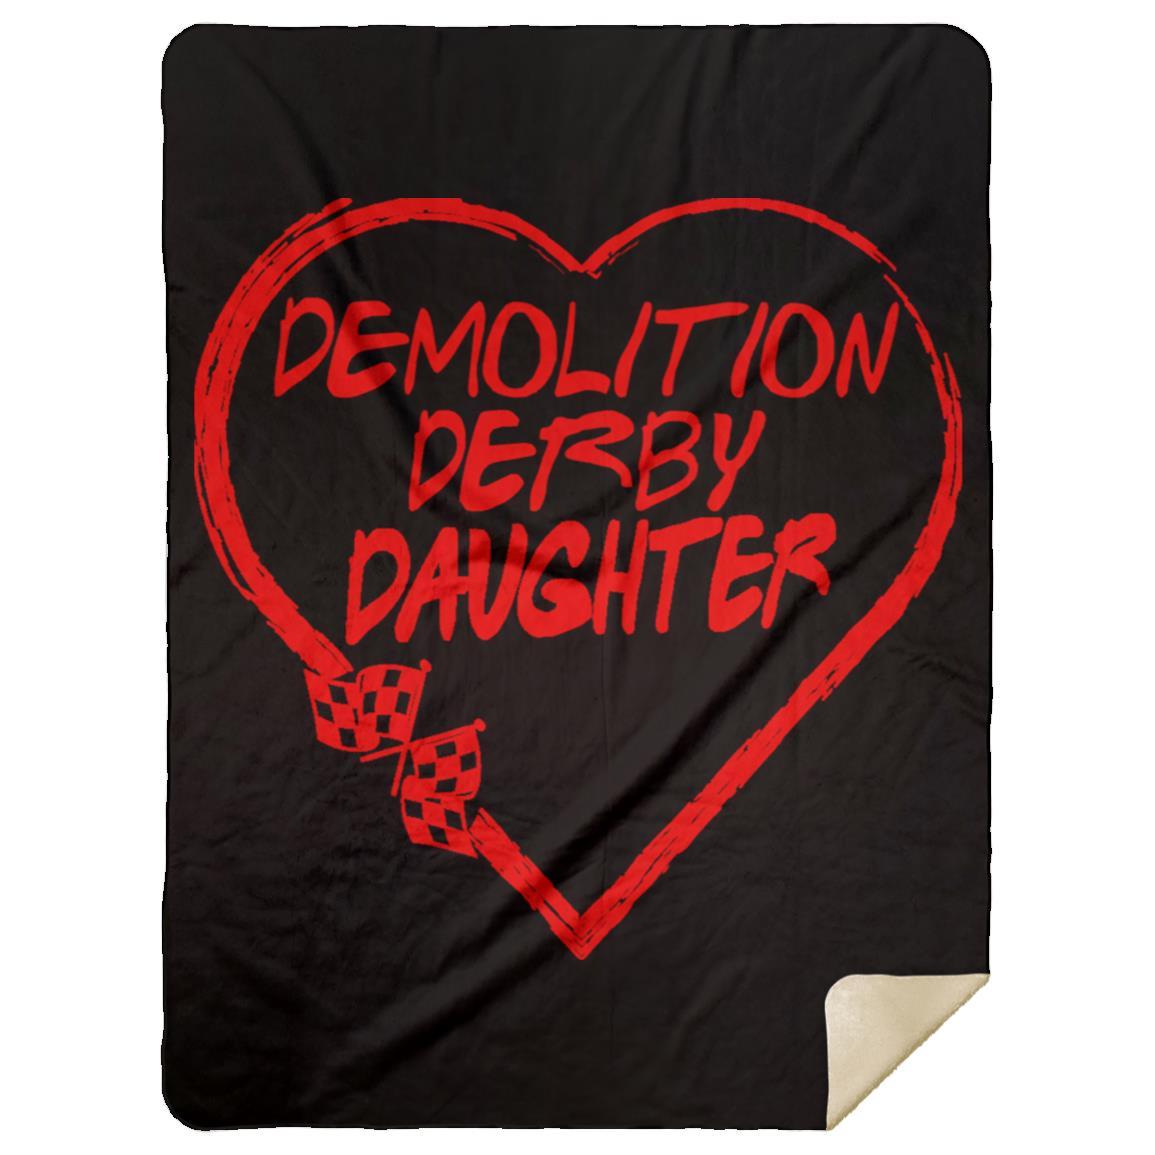 Demolition Derby Daughter Heart Premium Mink Sherpa Blanket 60x80